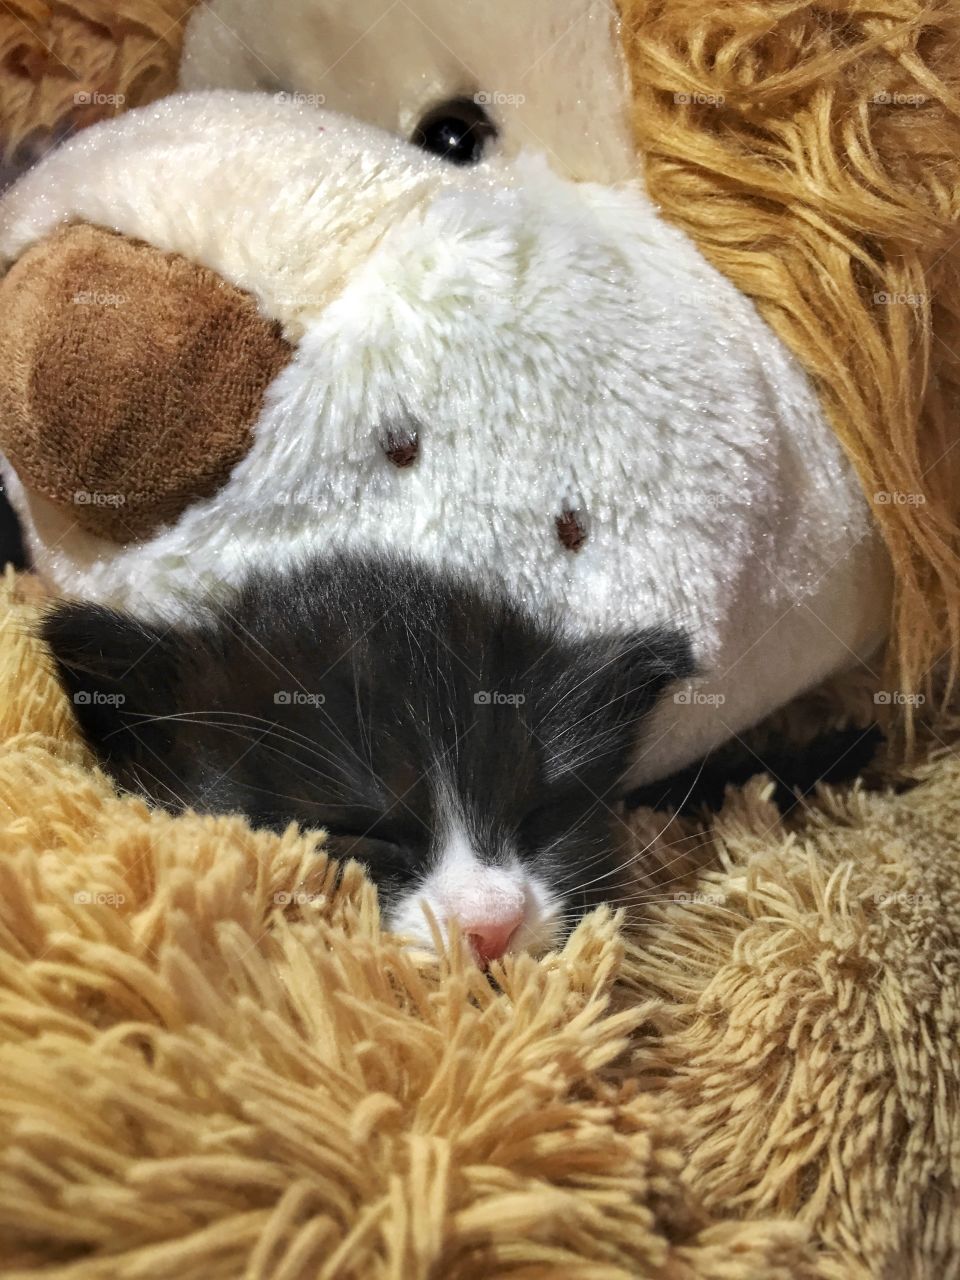 Kitten sleeping on top of the teddy bear